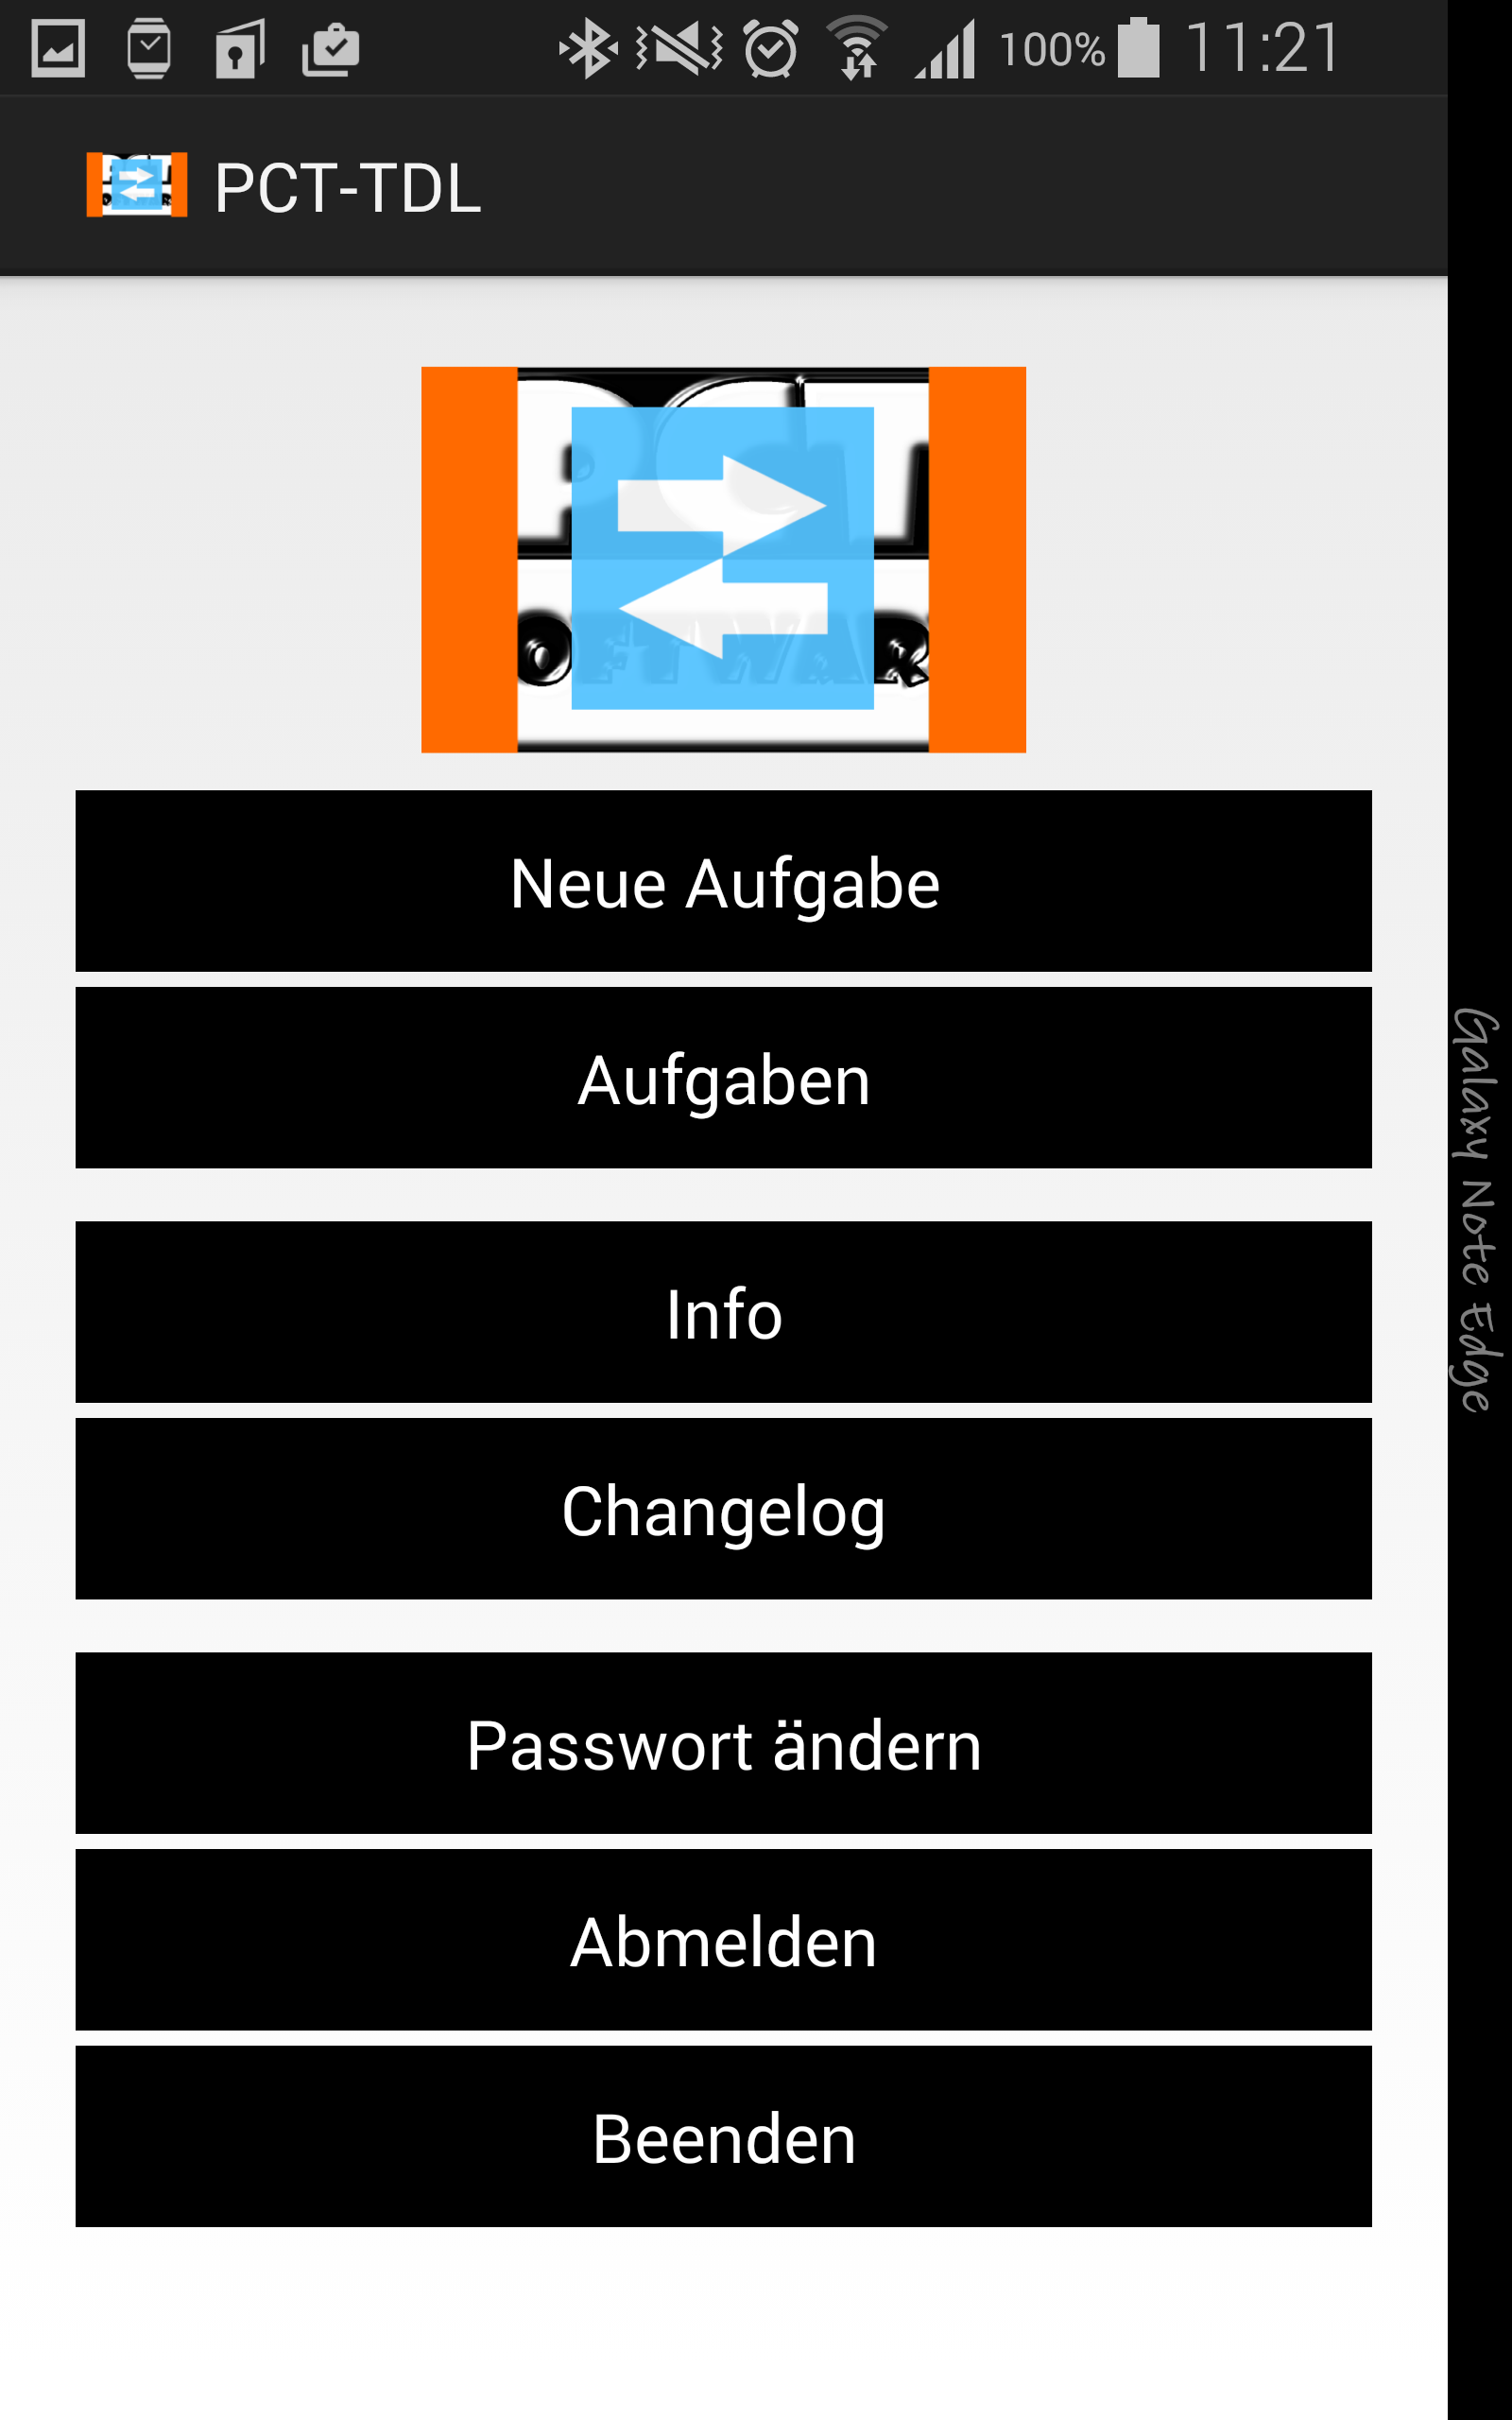 PCT-TDL - Client | Aufgaben anlegen und verwalten - Android App - Screenshot 7.